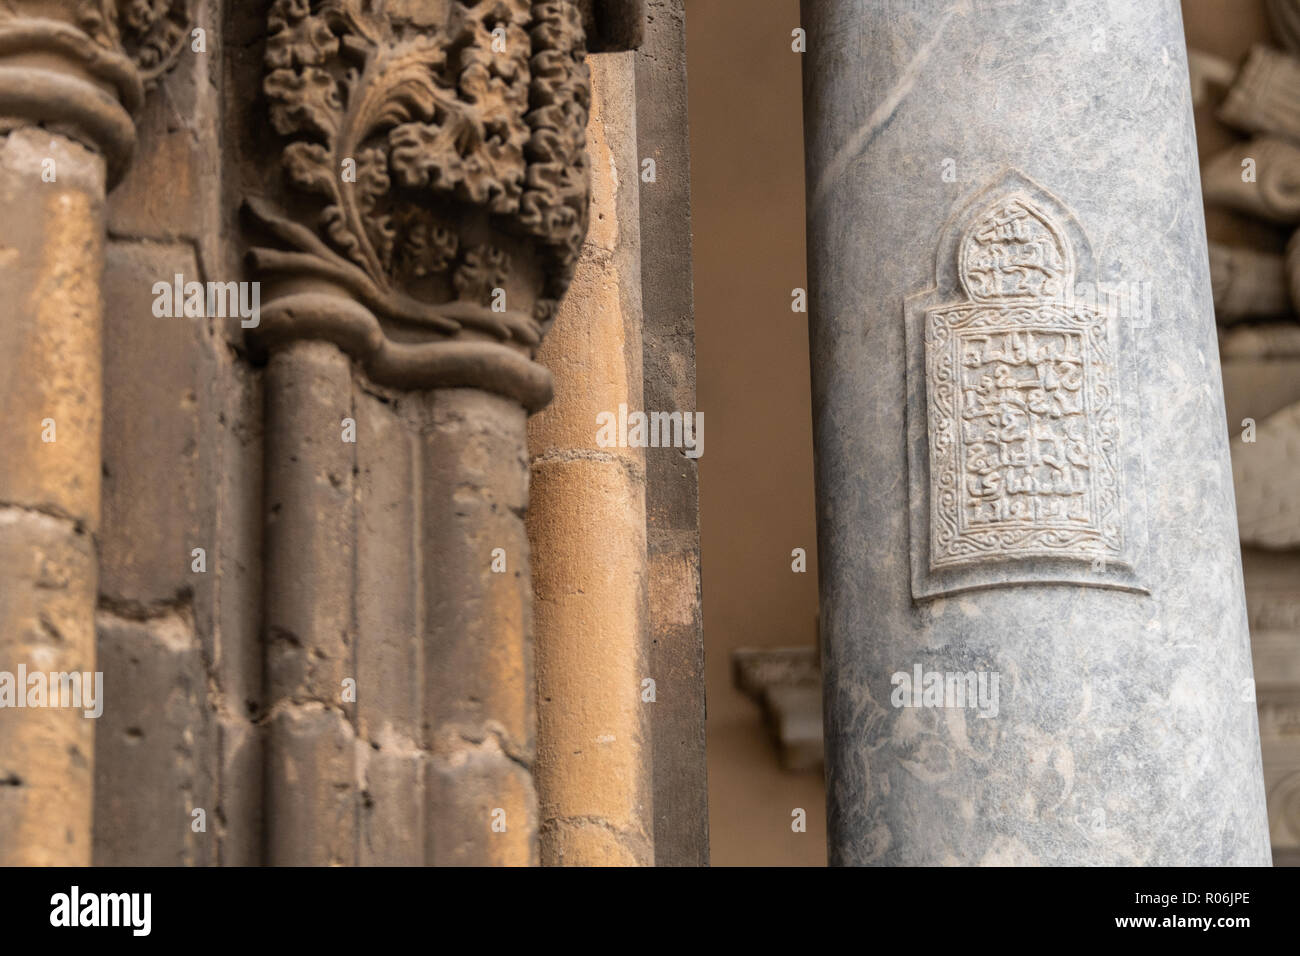 Inscription de Coran sur pilier de la cathédrale, la cathédrale de Palerme, Sicile Banque D'Images